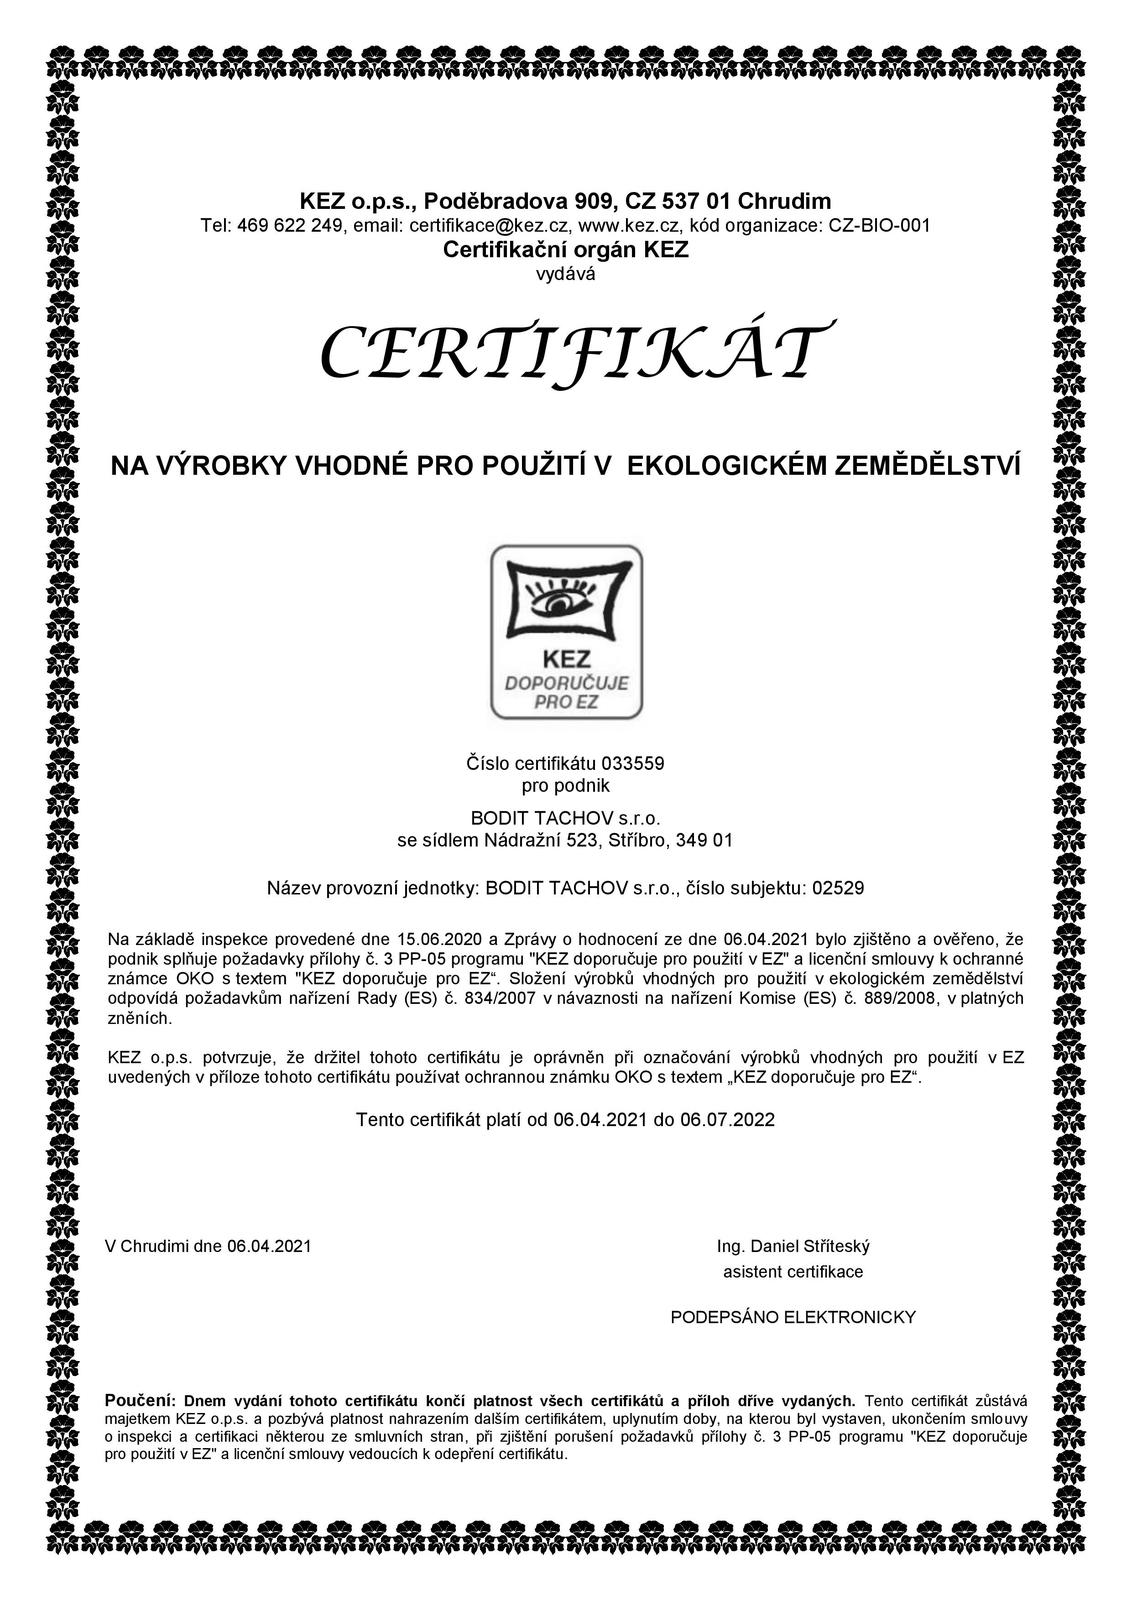 Certifikát CZ BODIT 2021 - 2022-page-001.jpg